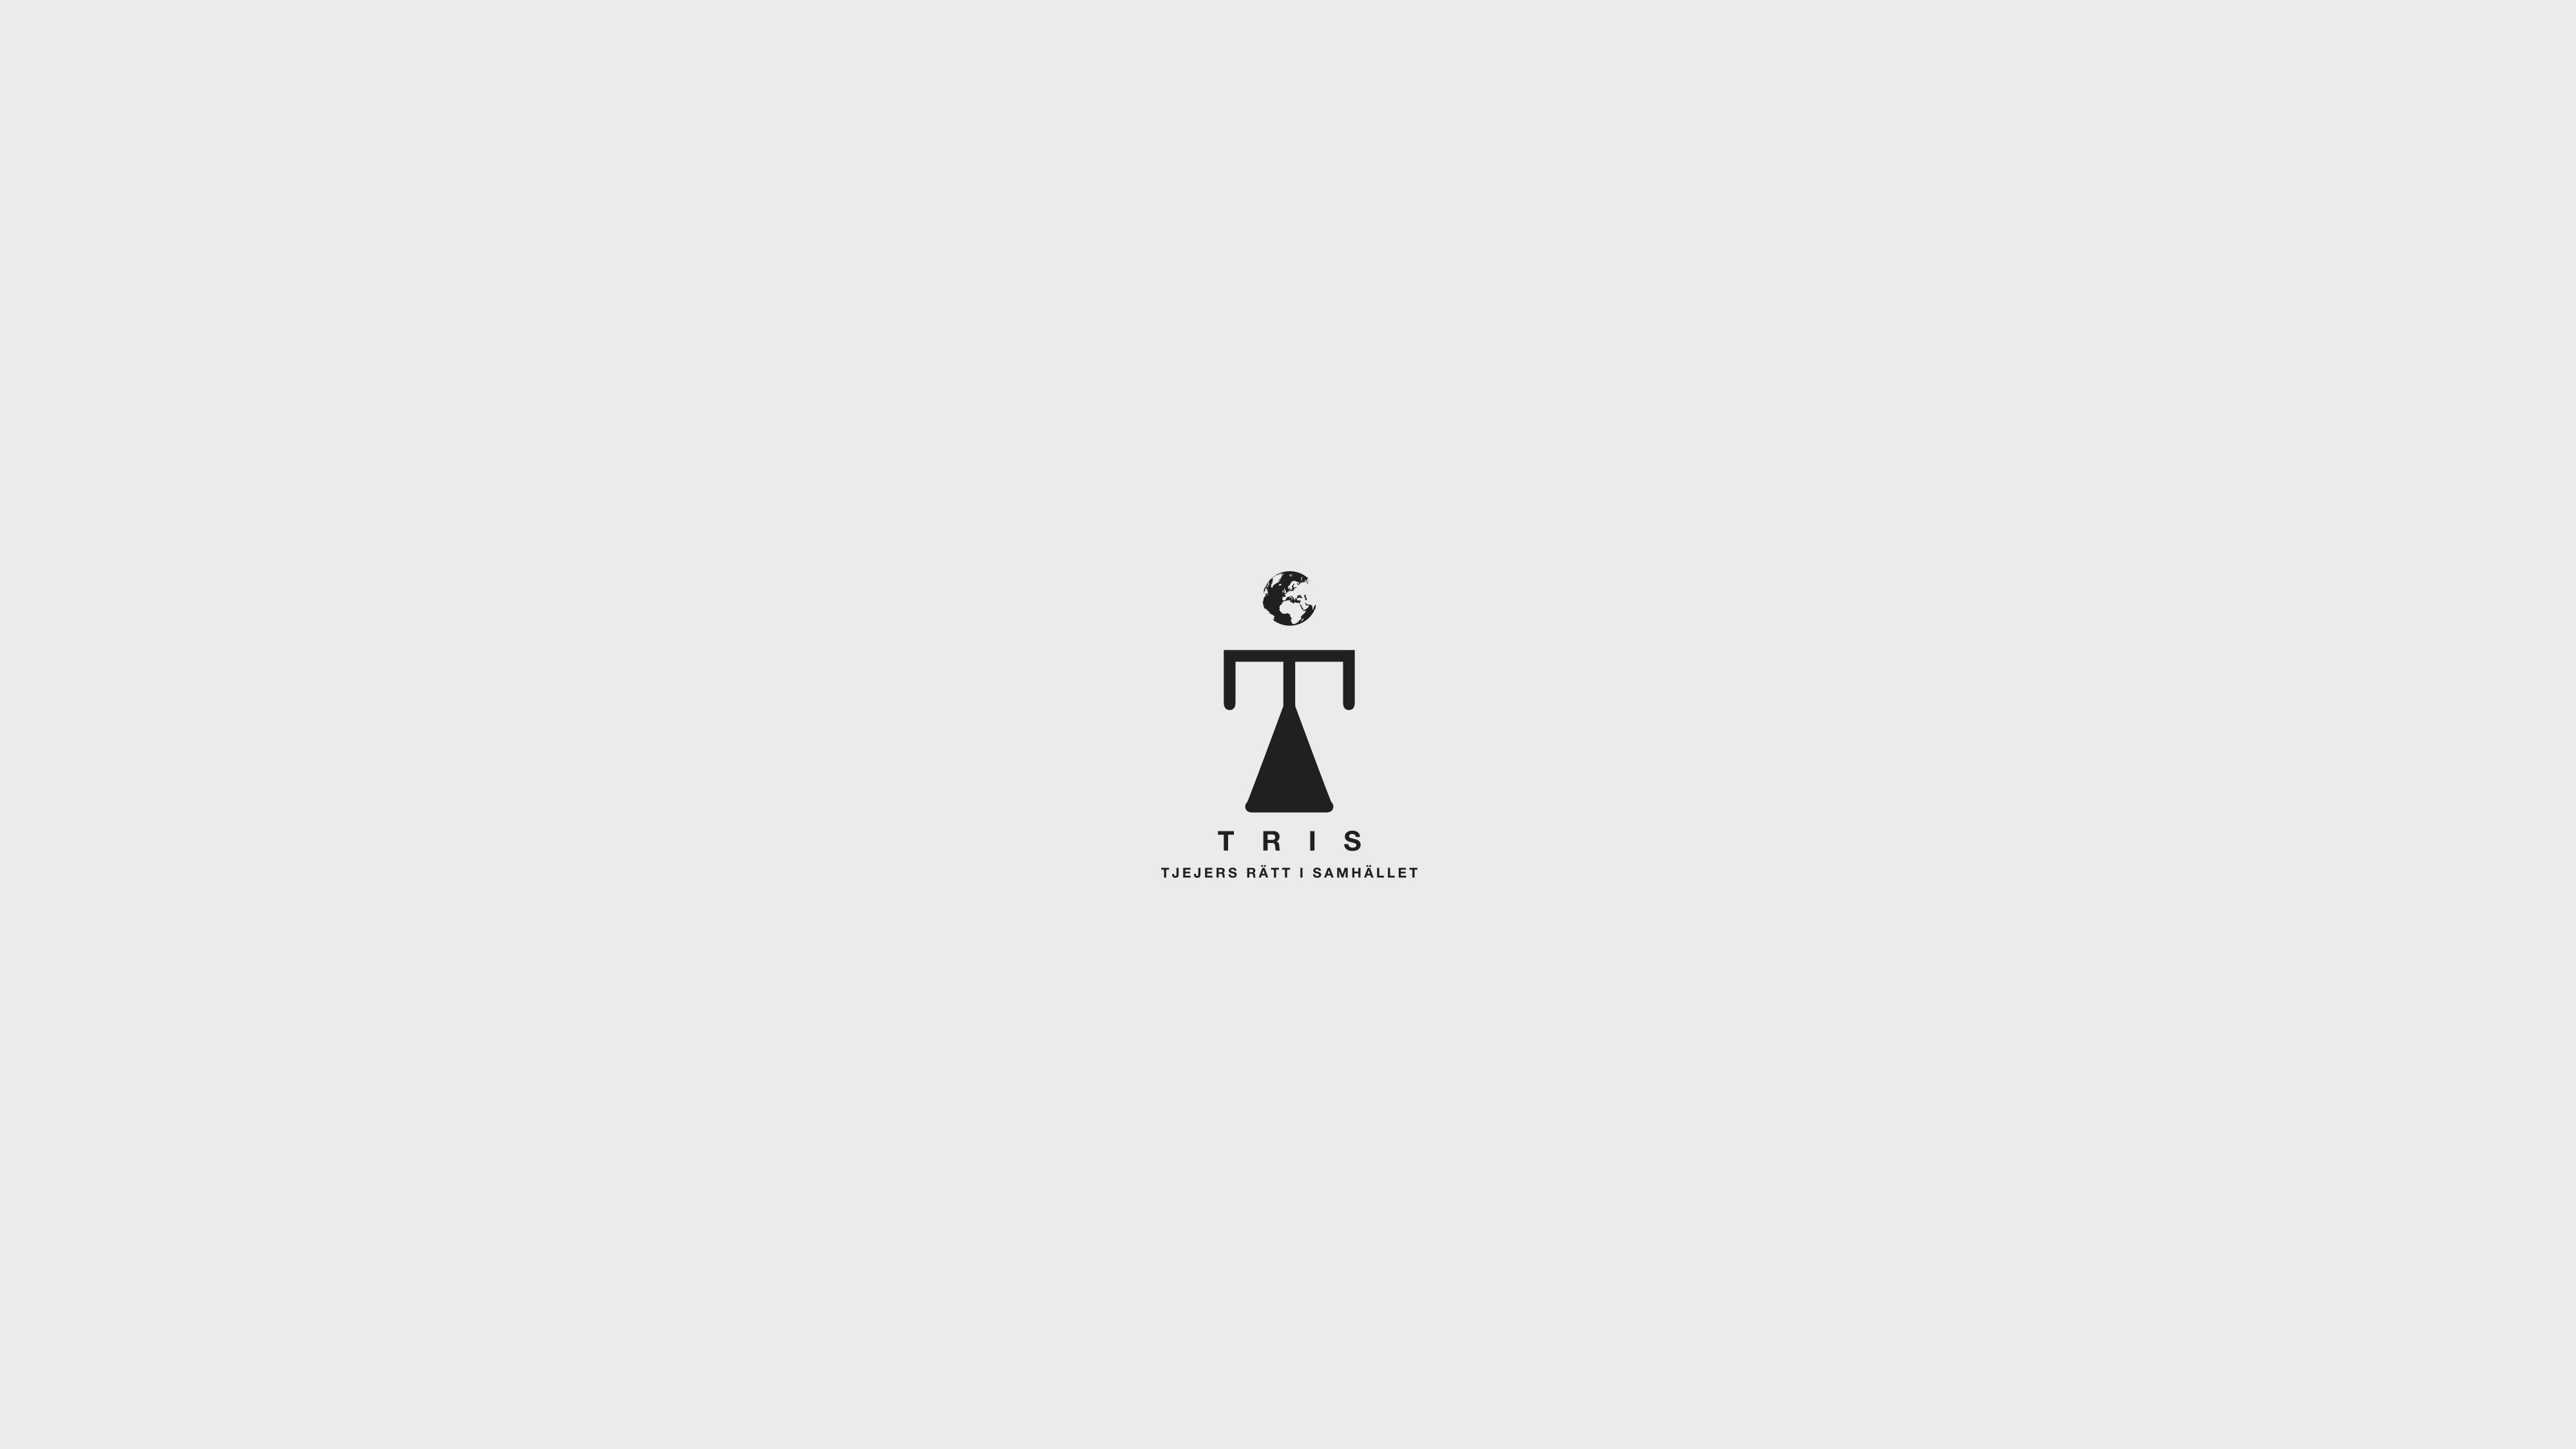 Tris logo 2 emanuel lindqvist graphic design.jpg